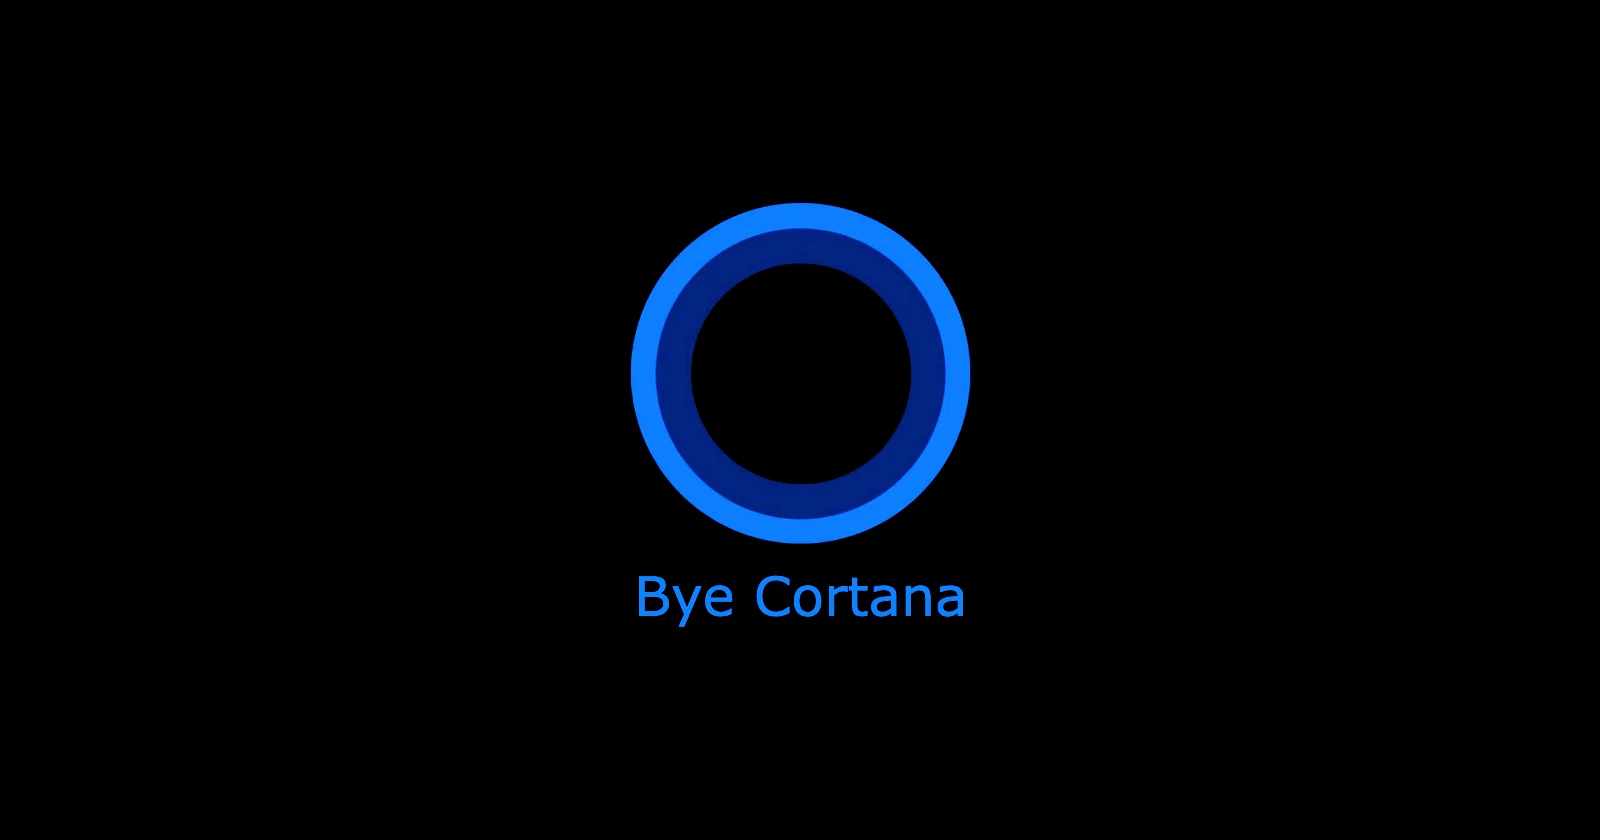 Cortana, farväl! Microsoft avslutar stöd för röstassistent